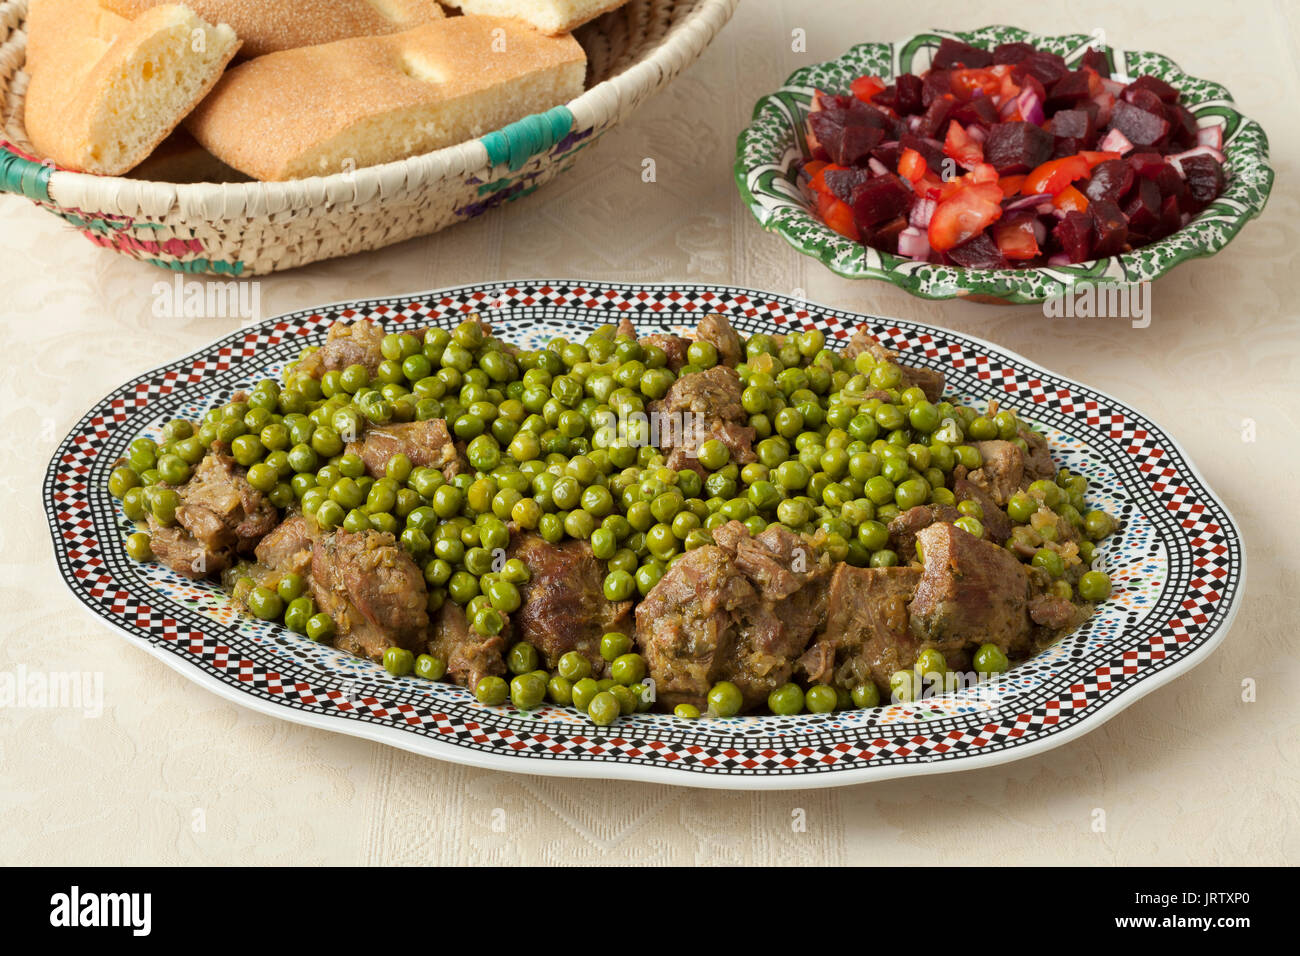 Traditionelle marokkanische Gerichte mit Fleisch, Erbsen, Rote Bete, Salat und Brot Nahaufnahme Stockfoto